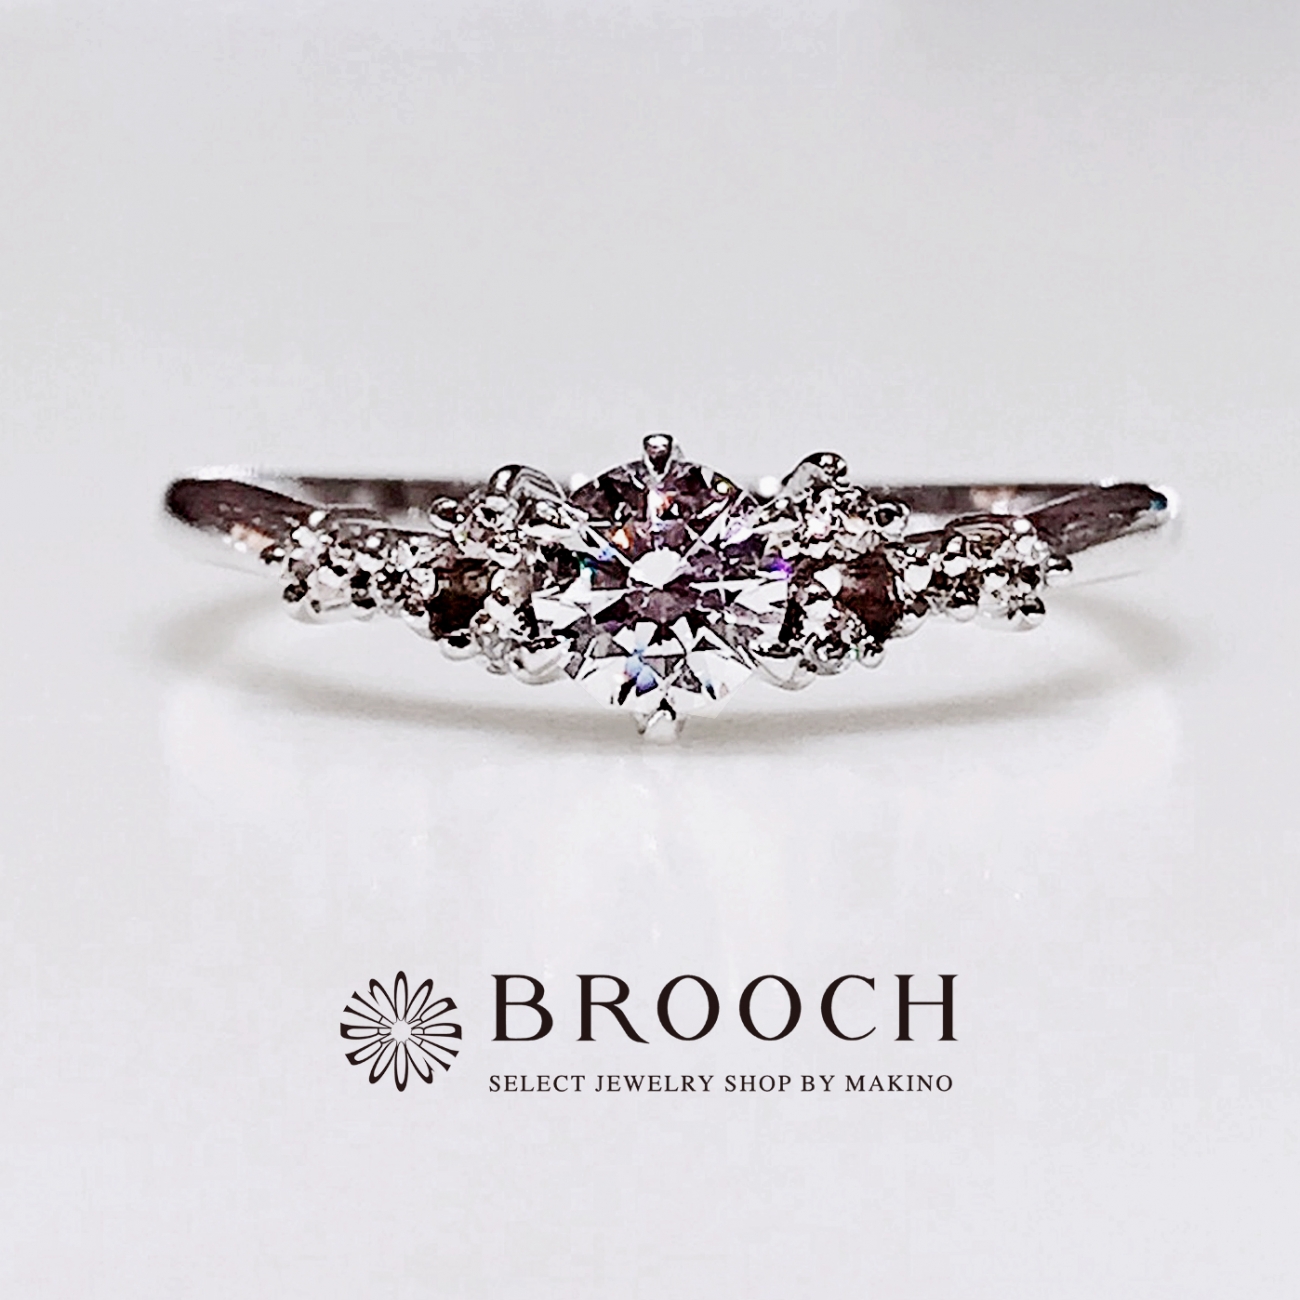 BROOCH 婚約指輪 エンゲージリング ティアラ風デザイン